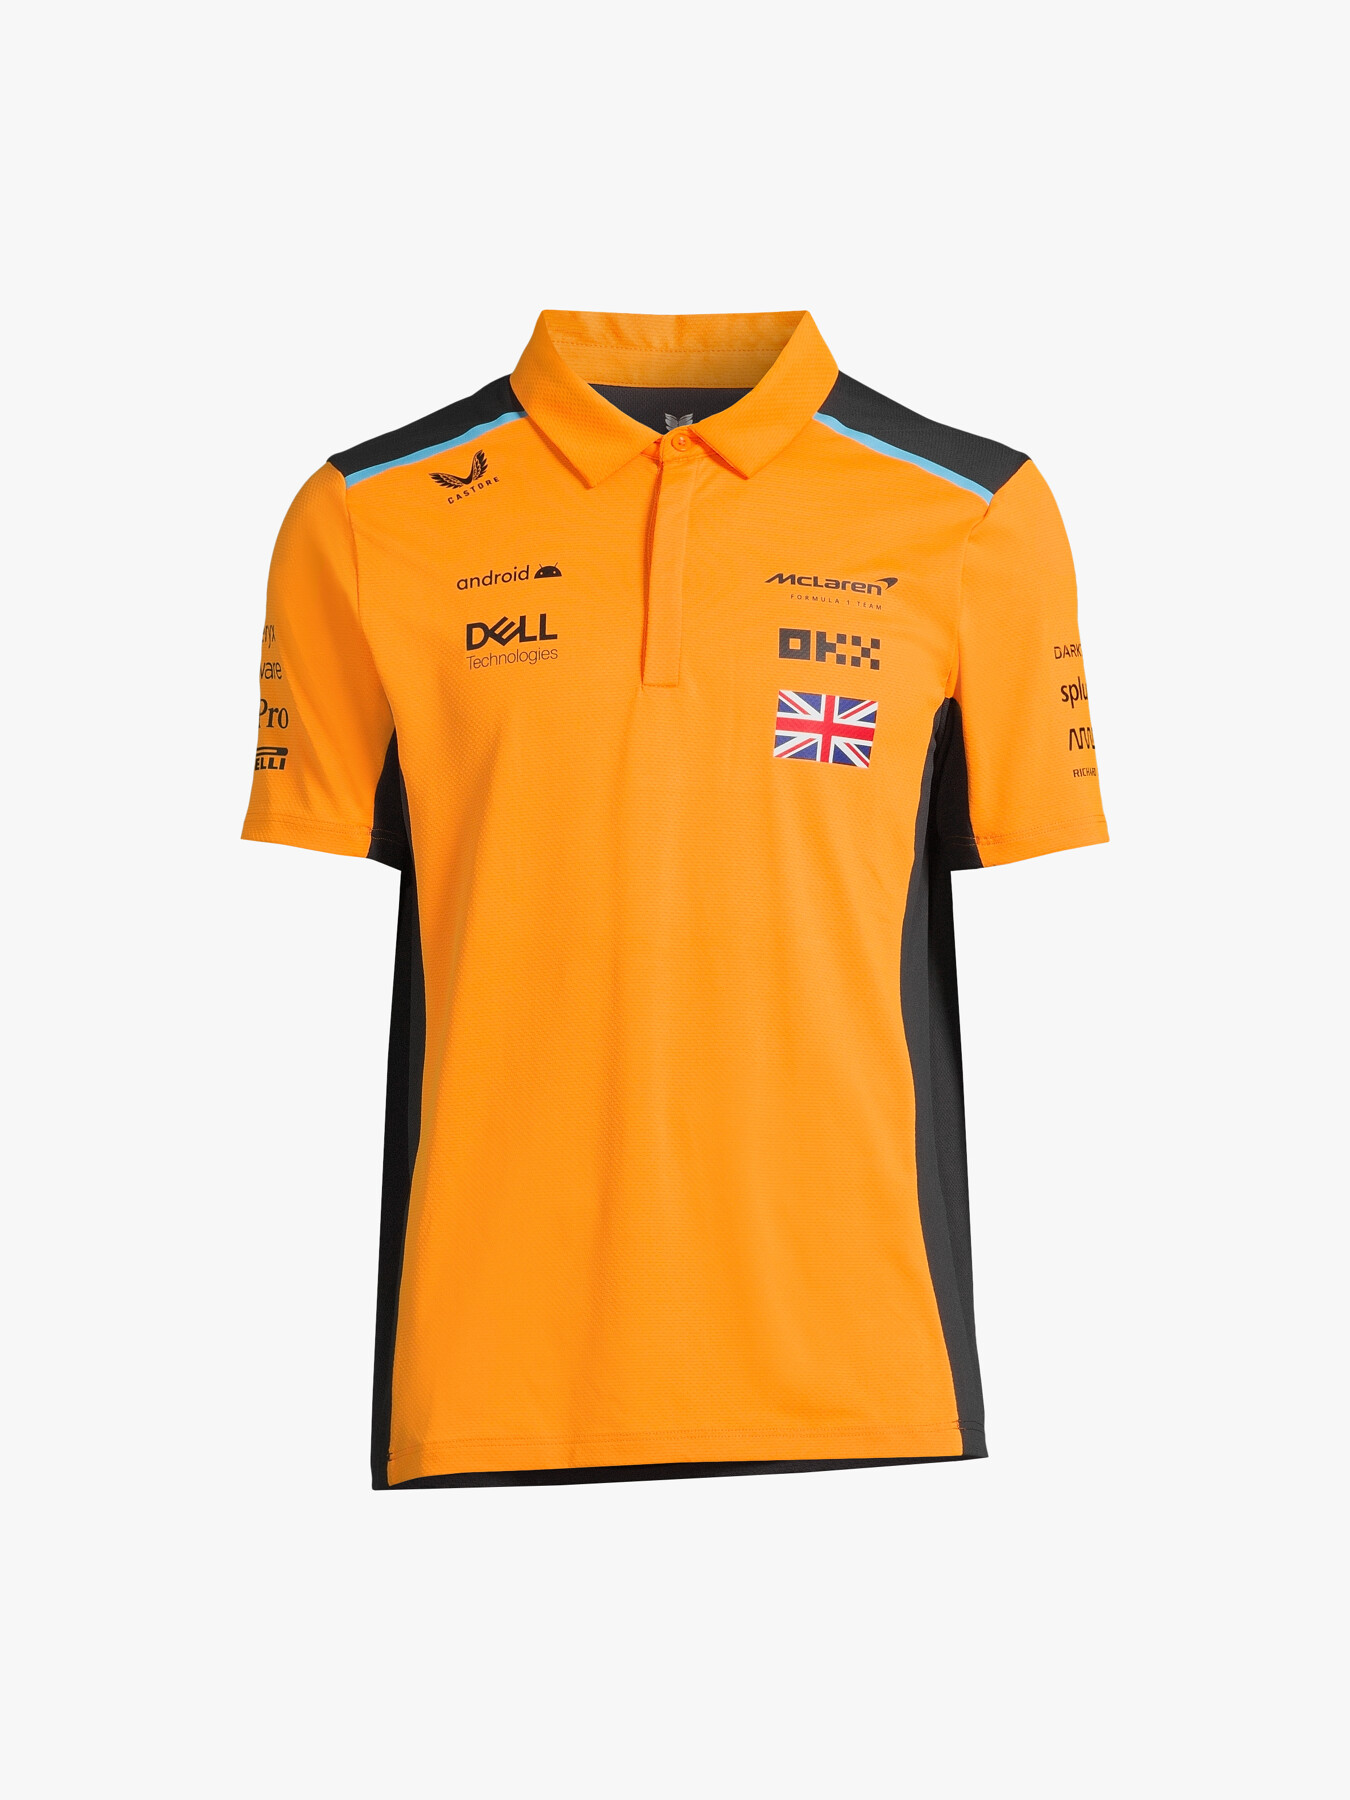 Castore McLaren Replica Polo Shirt Norris | T-Shirts & Tops | Fenwick